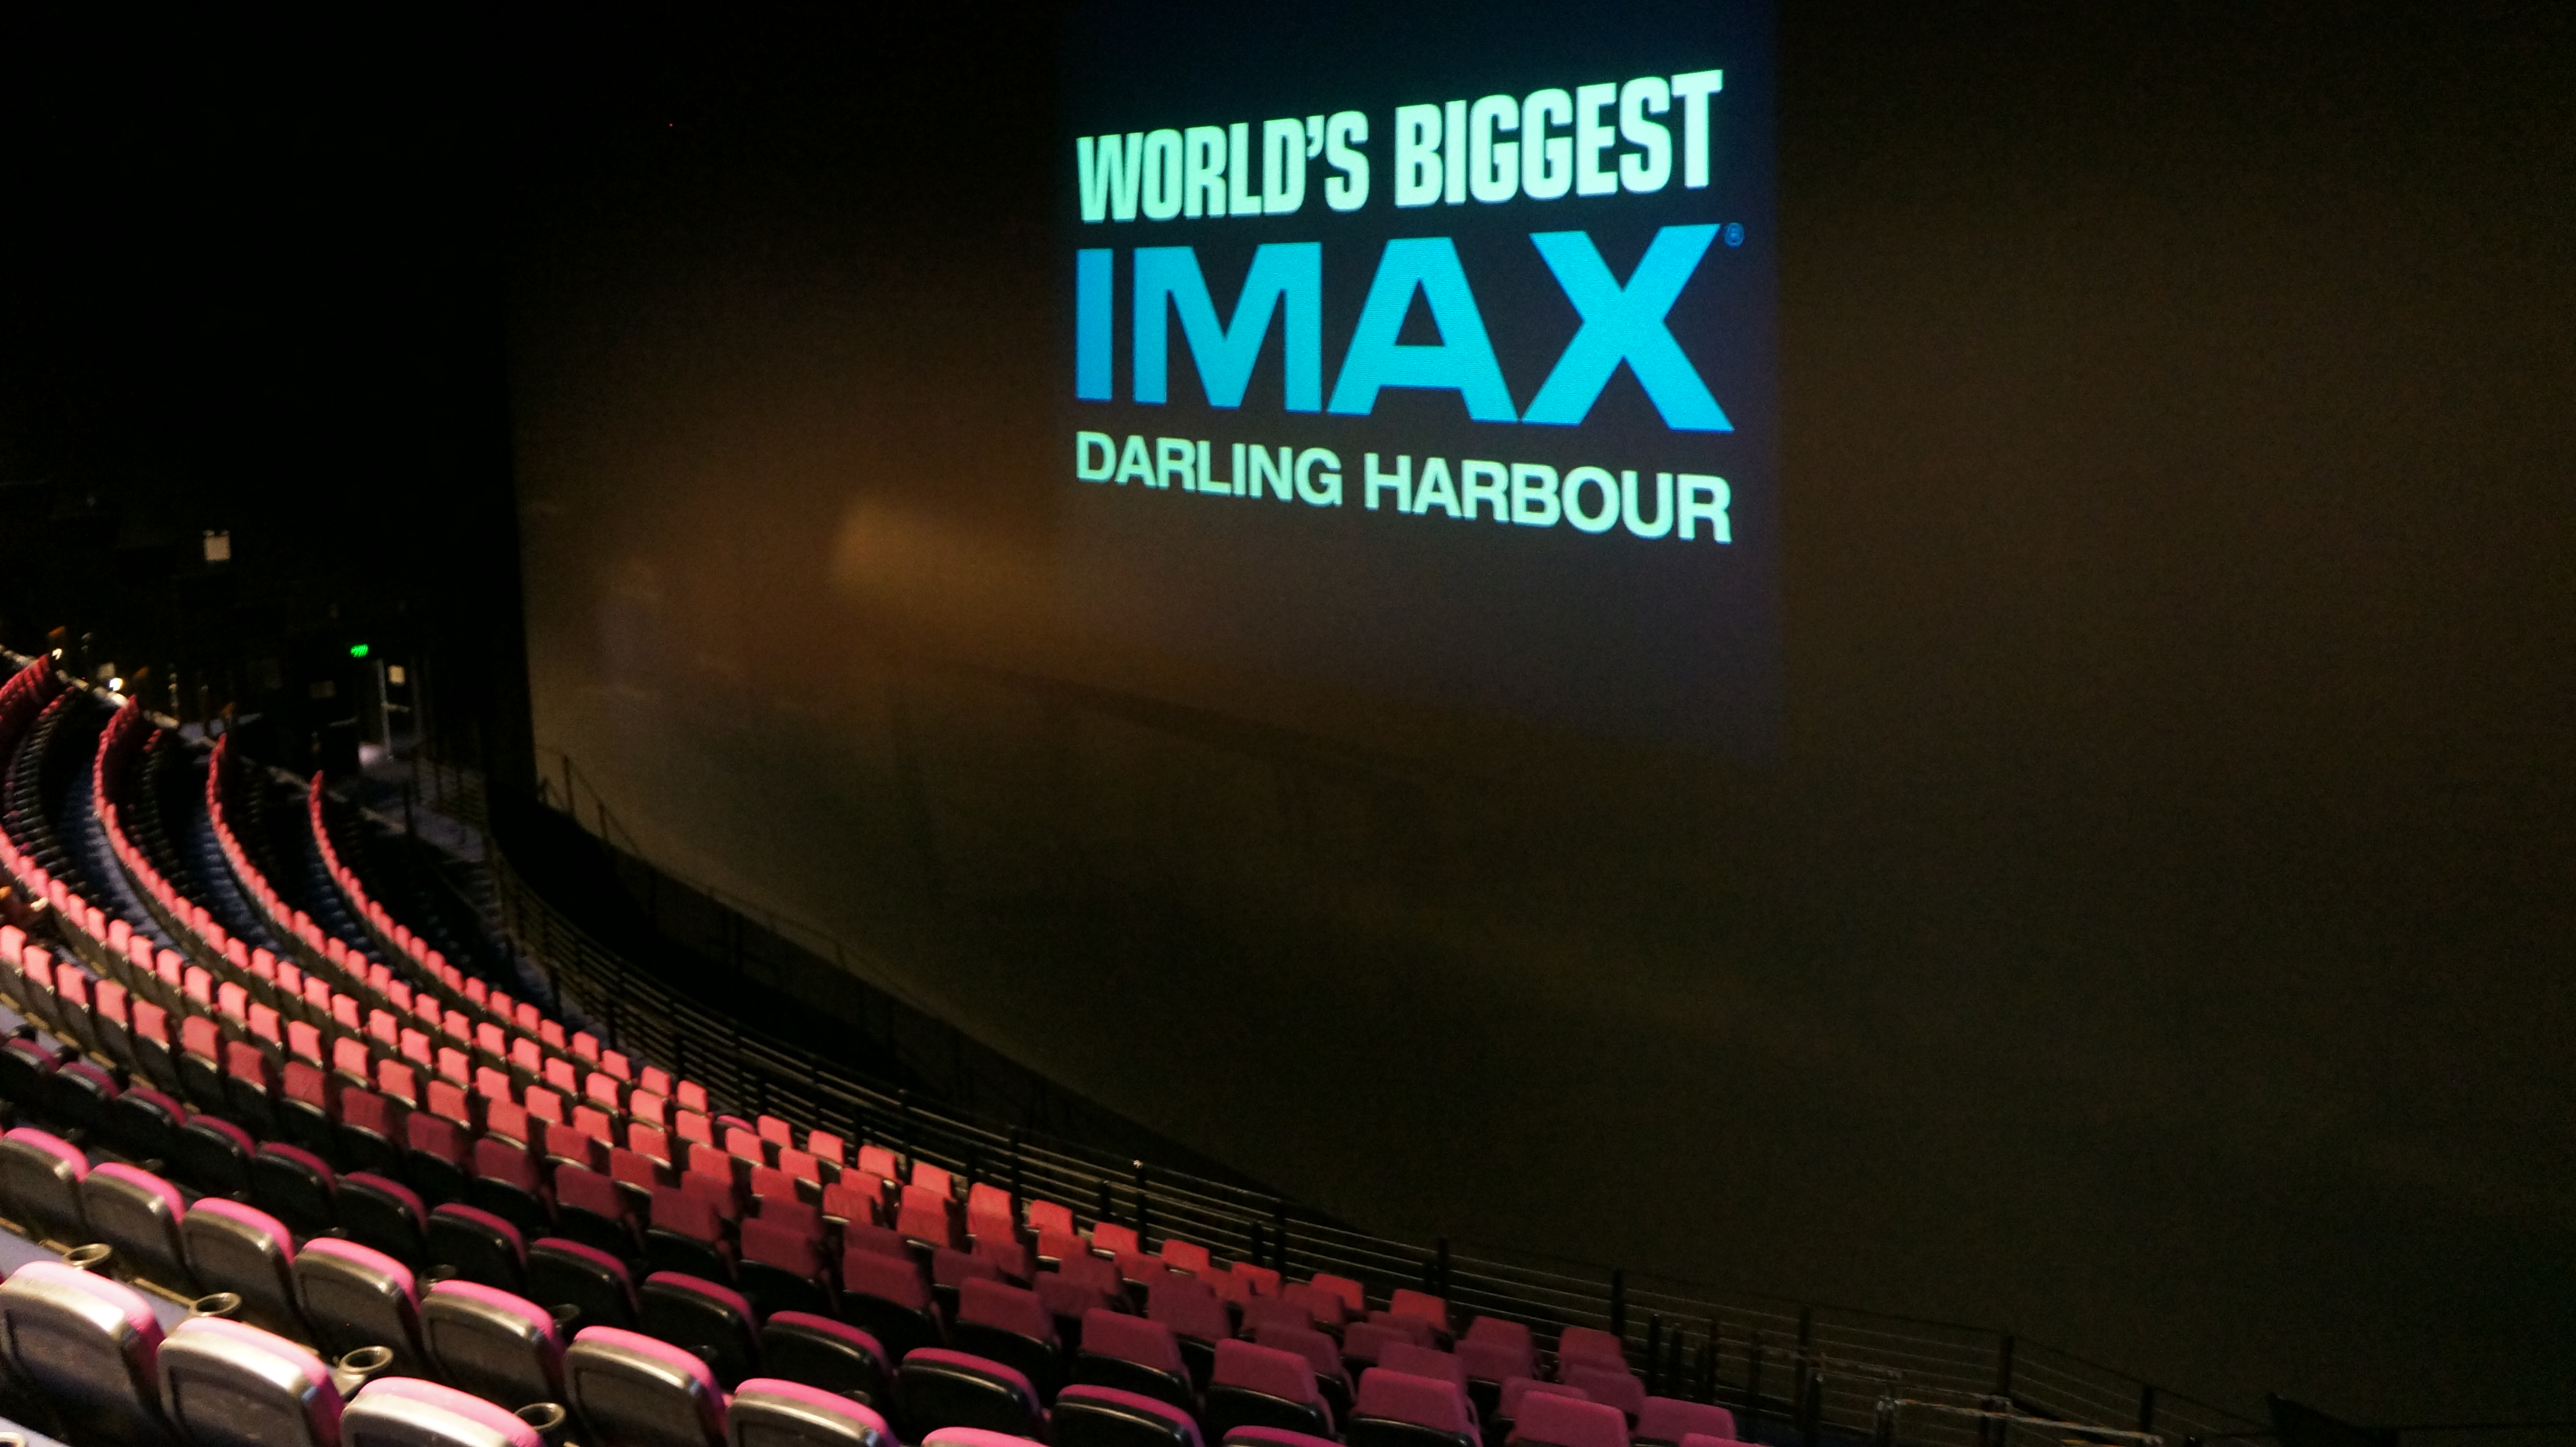 Кинотеатр с самым большим экраном. Панасоник аймакс Сидней. Аймакс кинотеатр в Москве самый большой экран. Panasonic IMAX Австралия Сидней. Аймакс кинотеатр Краснодар СБС.